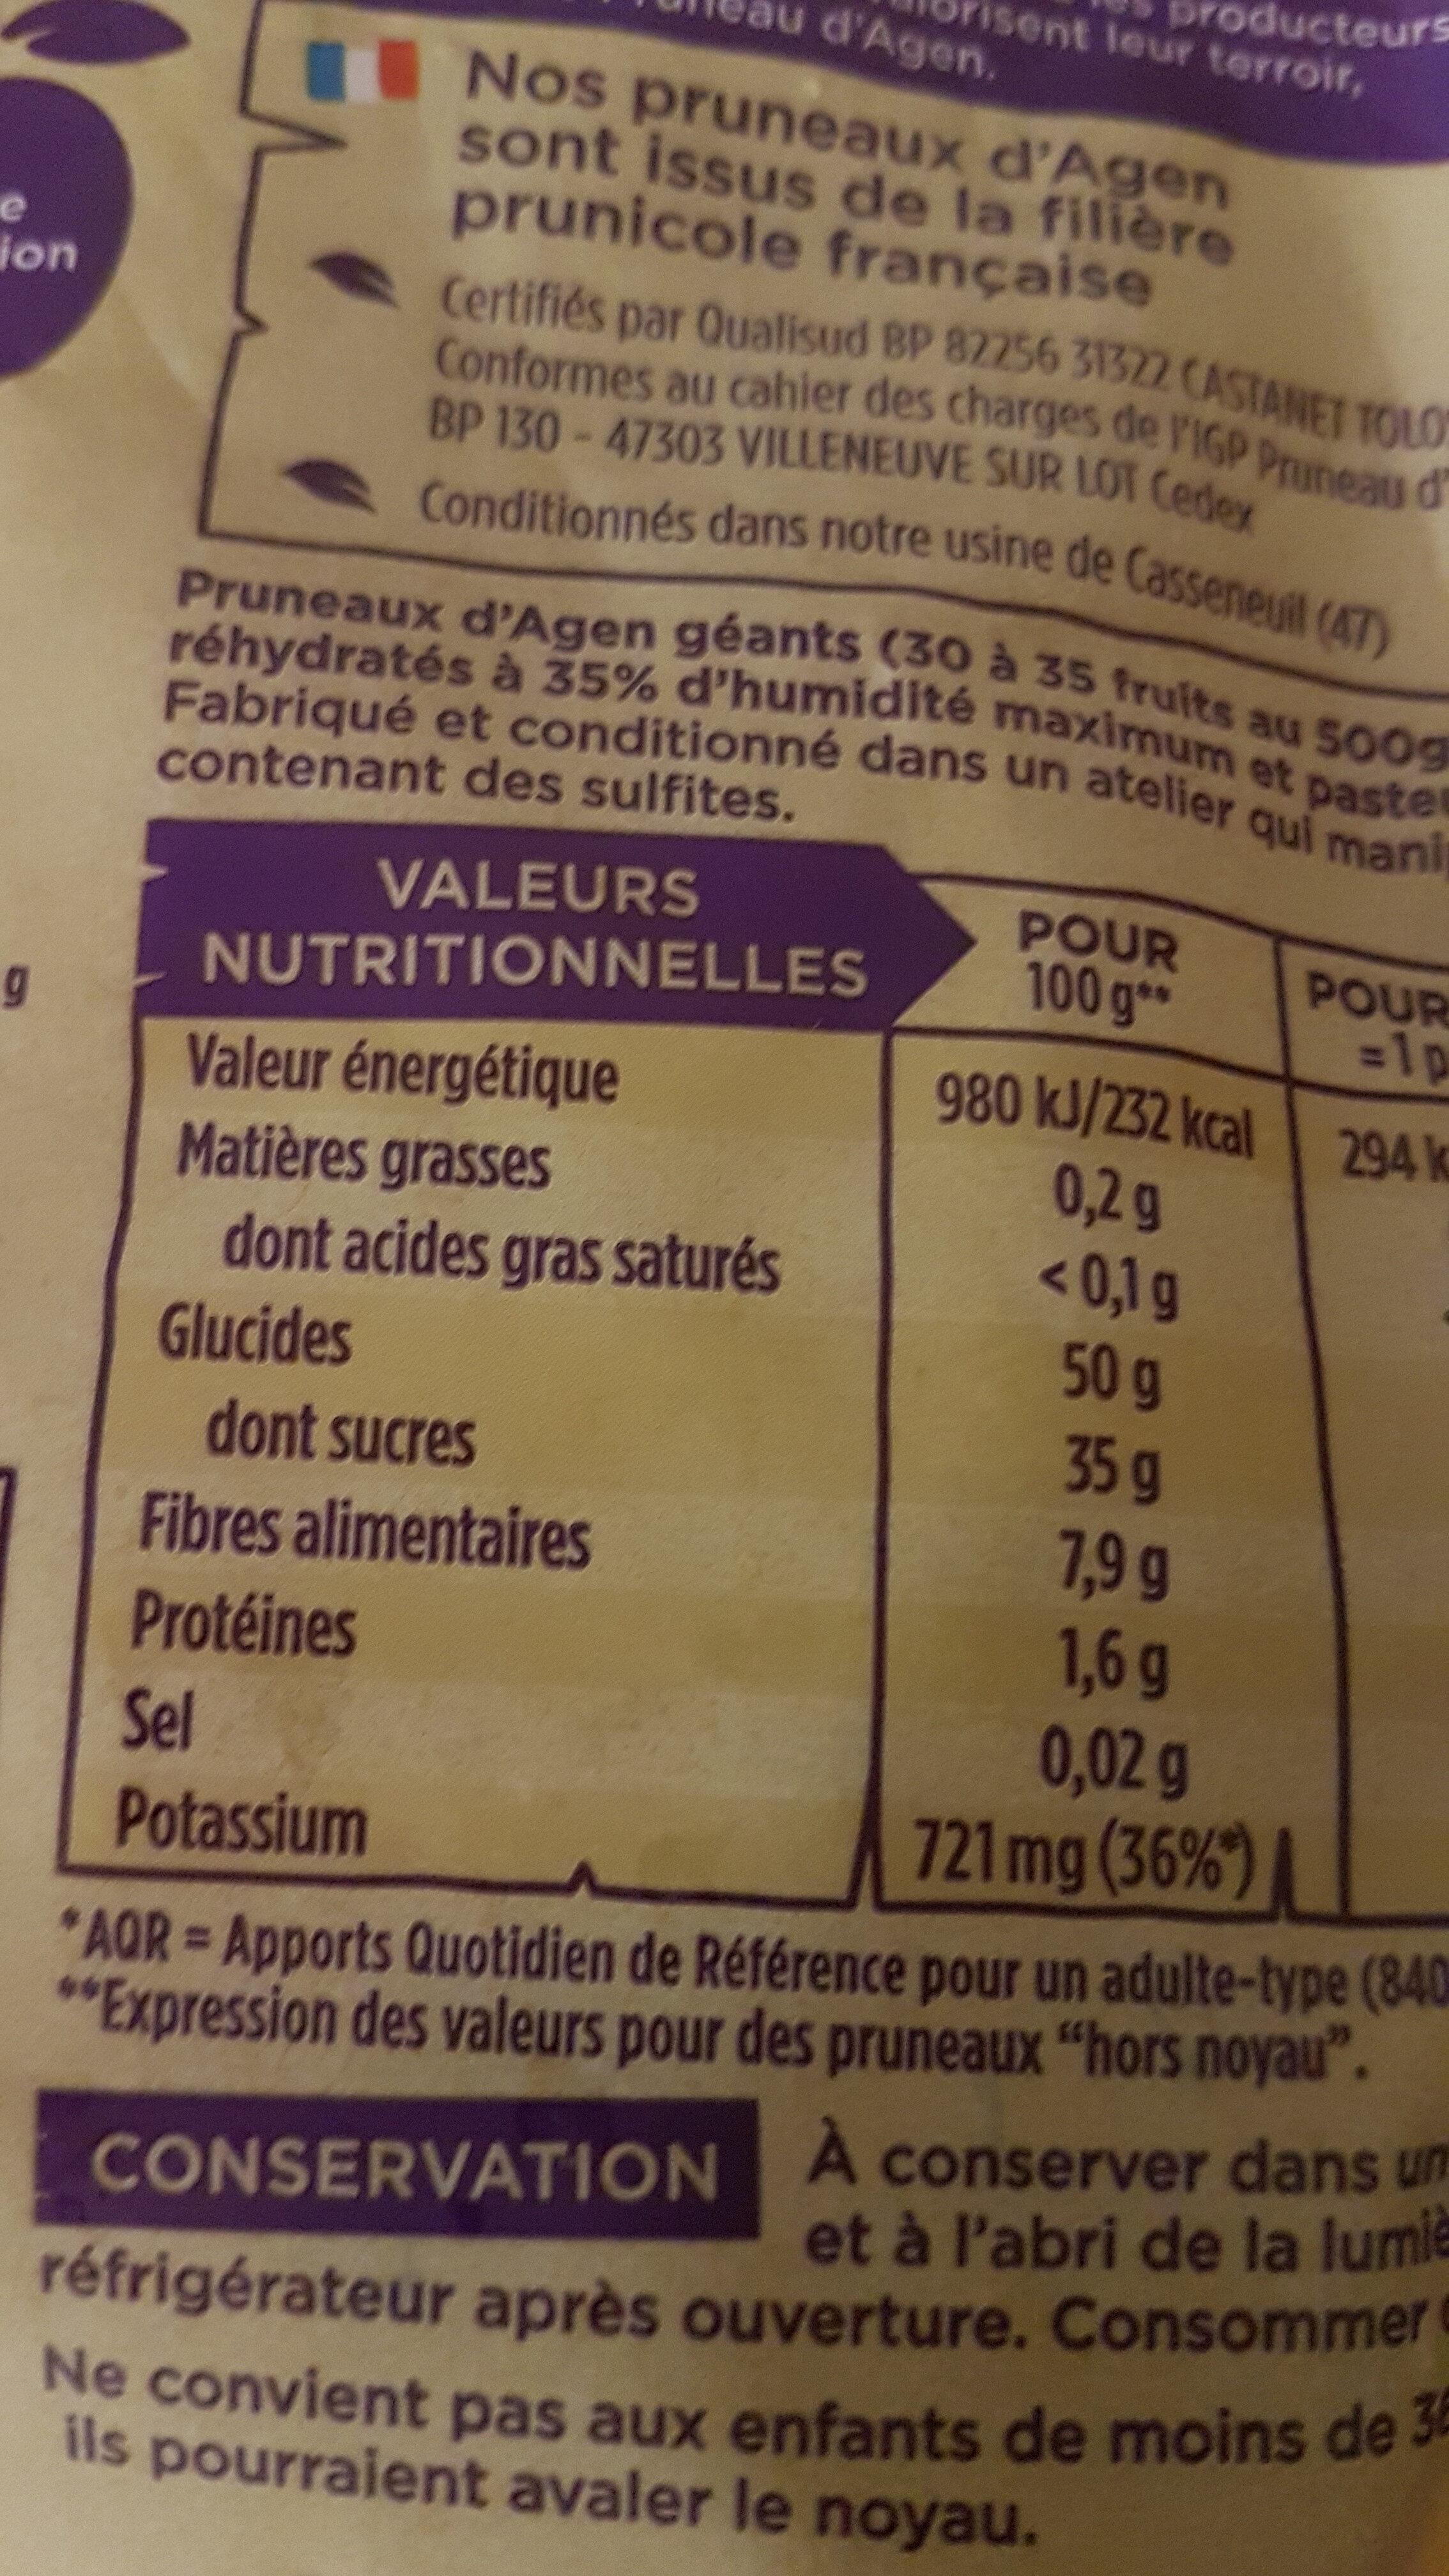 Pruneaux d'agen avec noyaux - Nutrition facts - fr